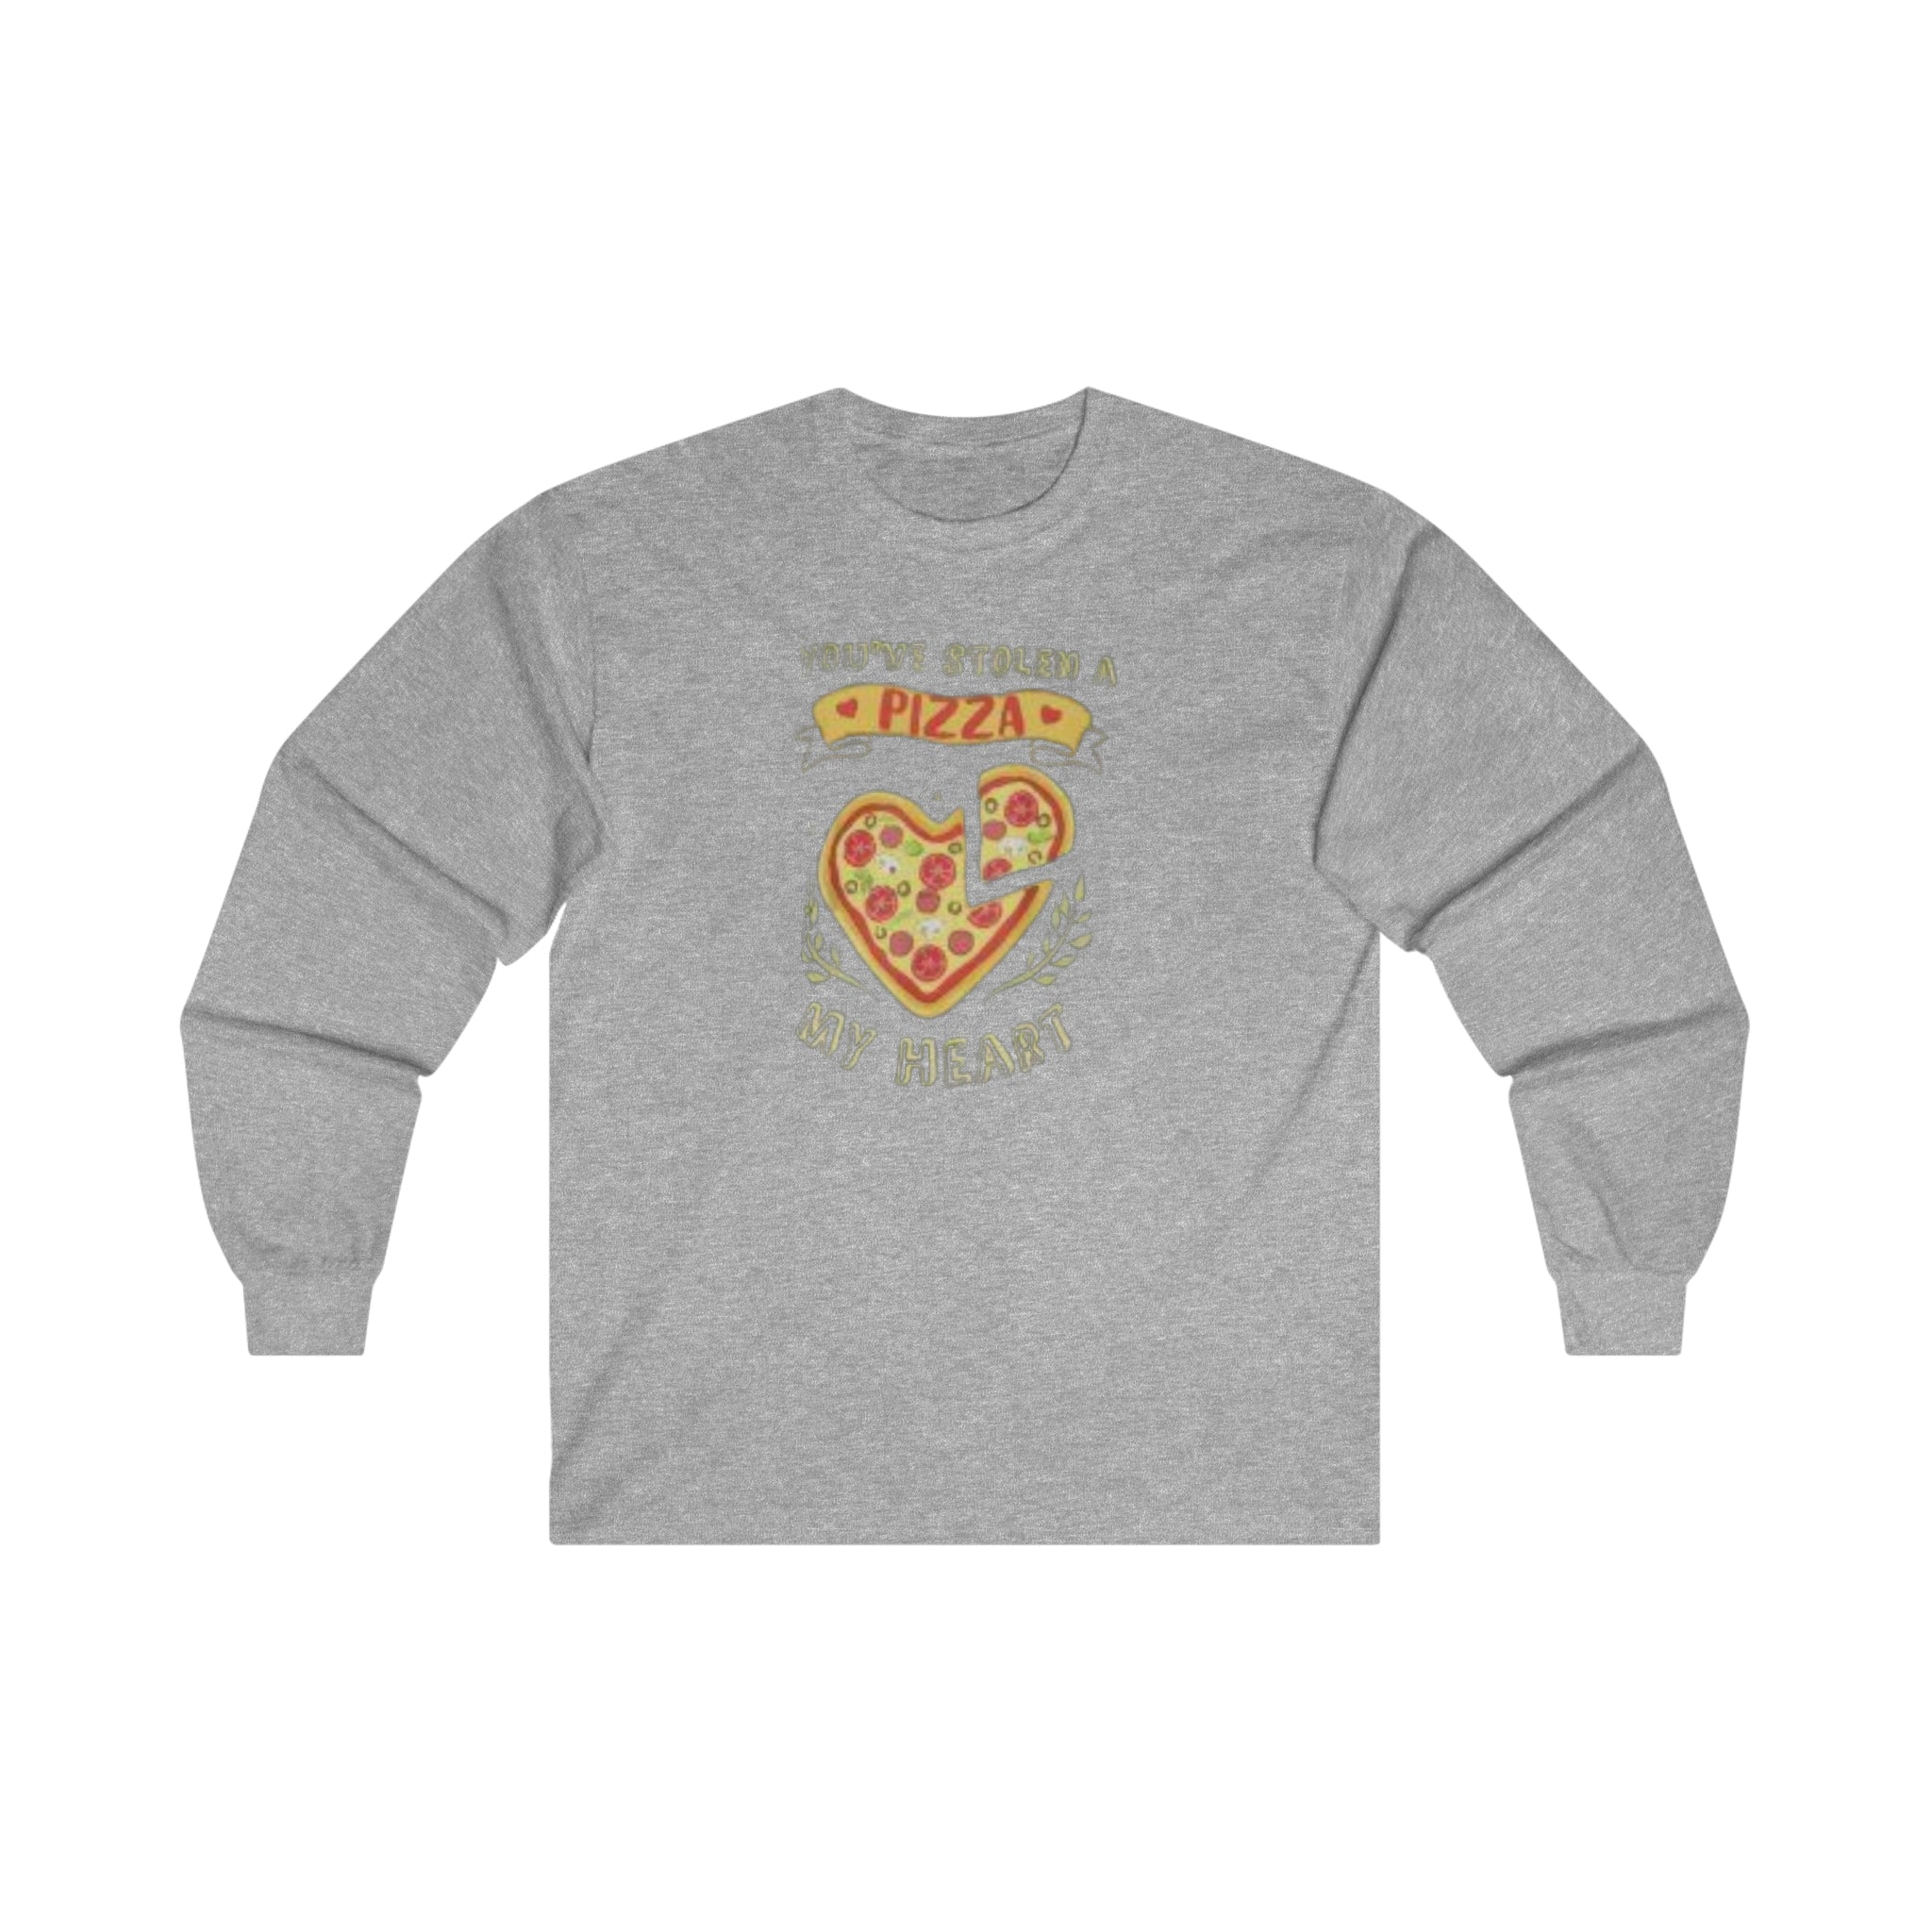 You've Stolen A Pizza My Heart Long-Sleeve T-Shirt